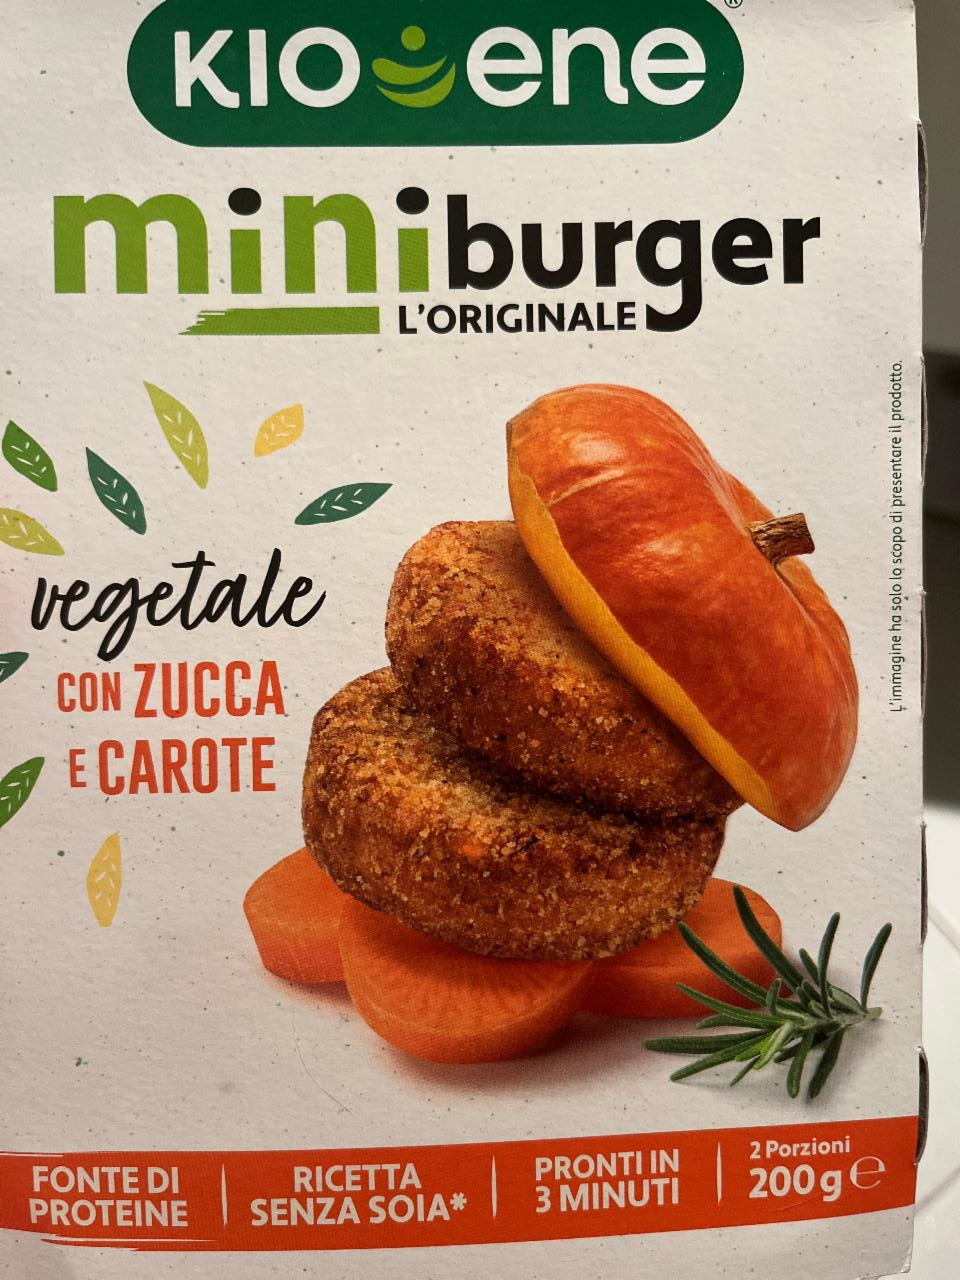 Fotografie - Miniburger l'Originale vegetale con Zucca e Carote Kioene